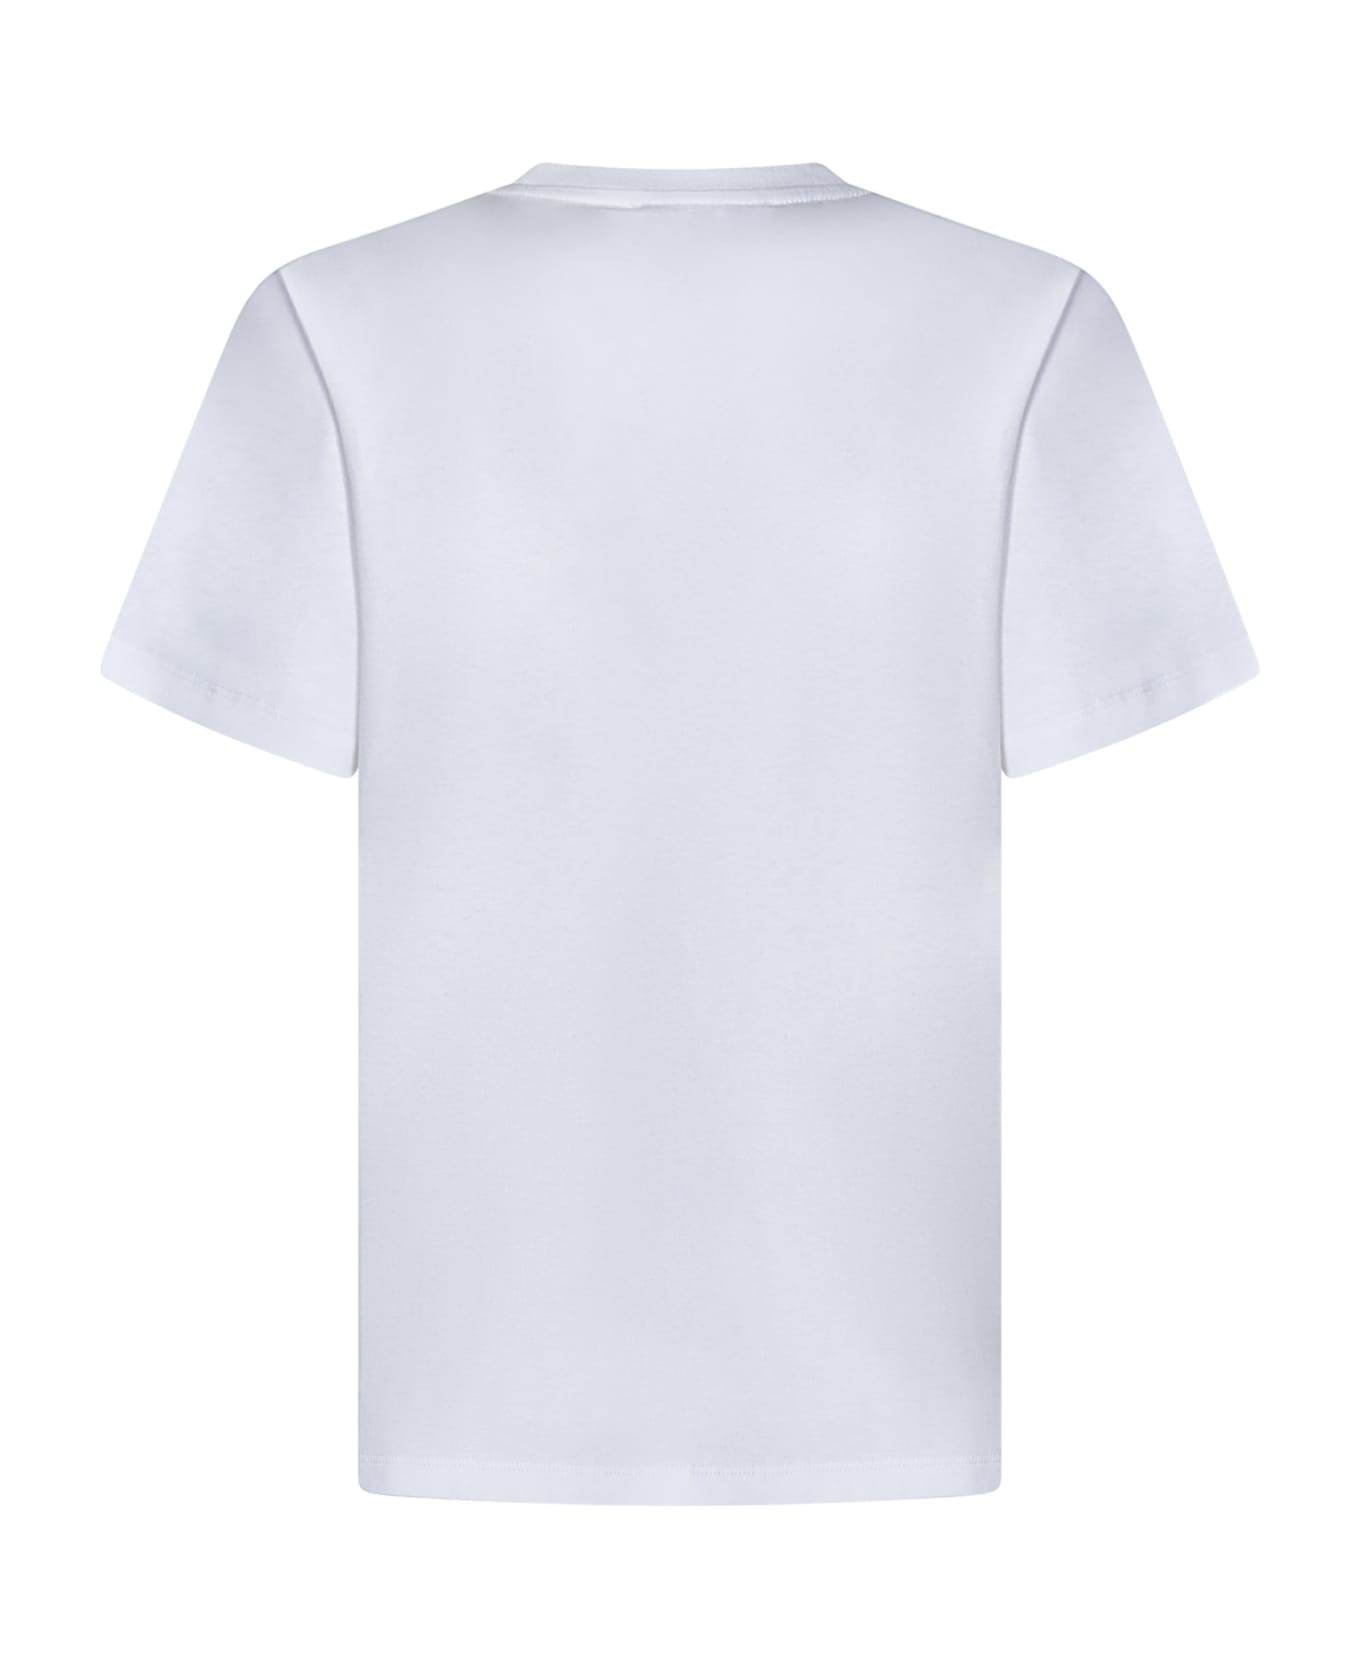 Coperni T-shirt - White